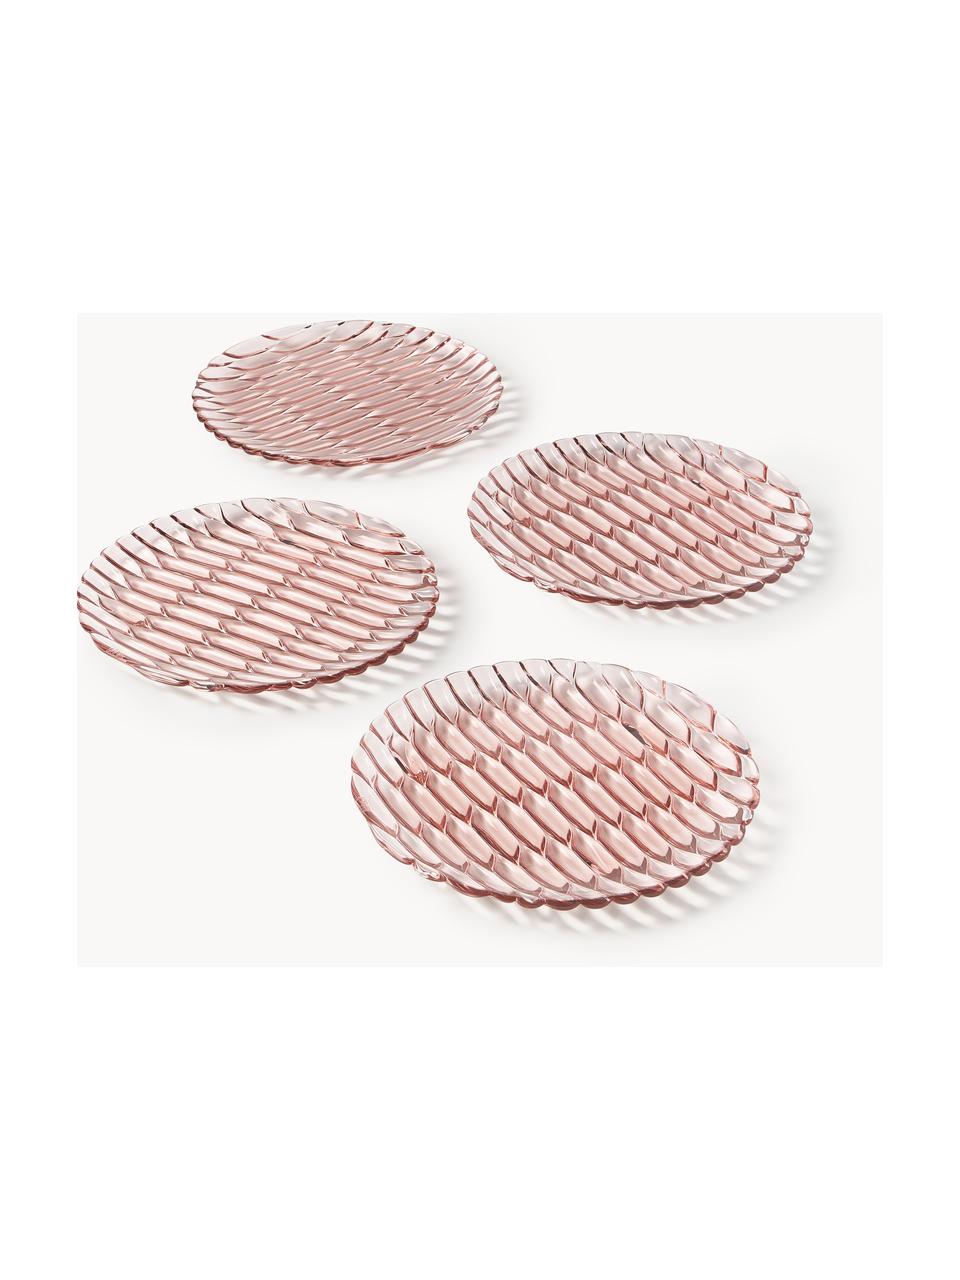 Raňajkové taniere so štruktúrovaným vzorom Jellies, 4 ks, Plast, Svetloružová, Ø 22 cm